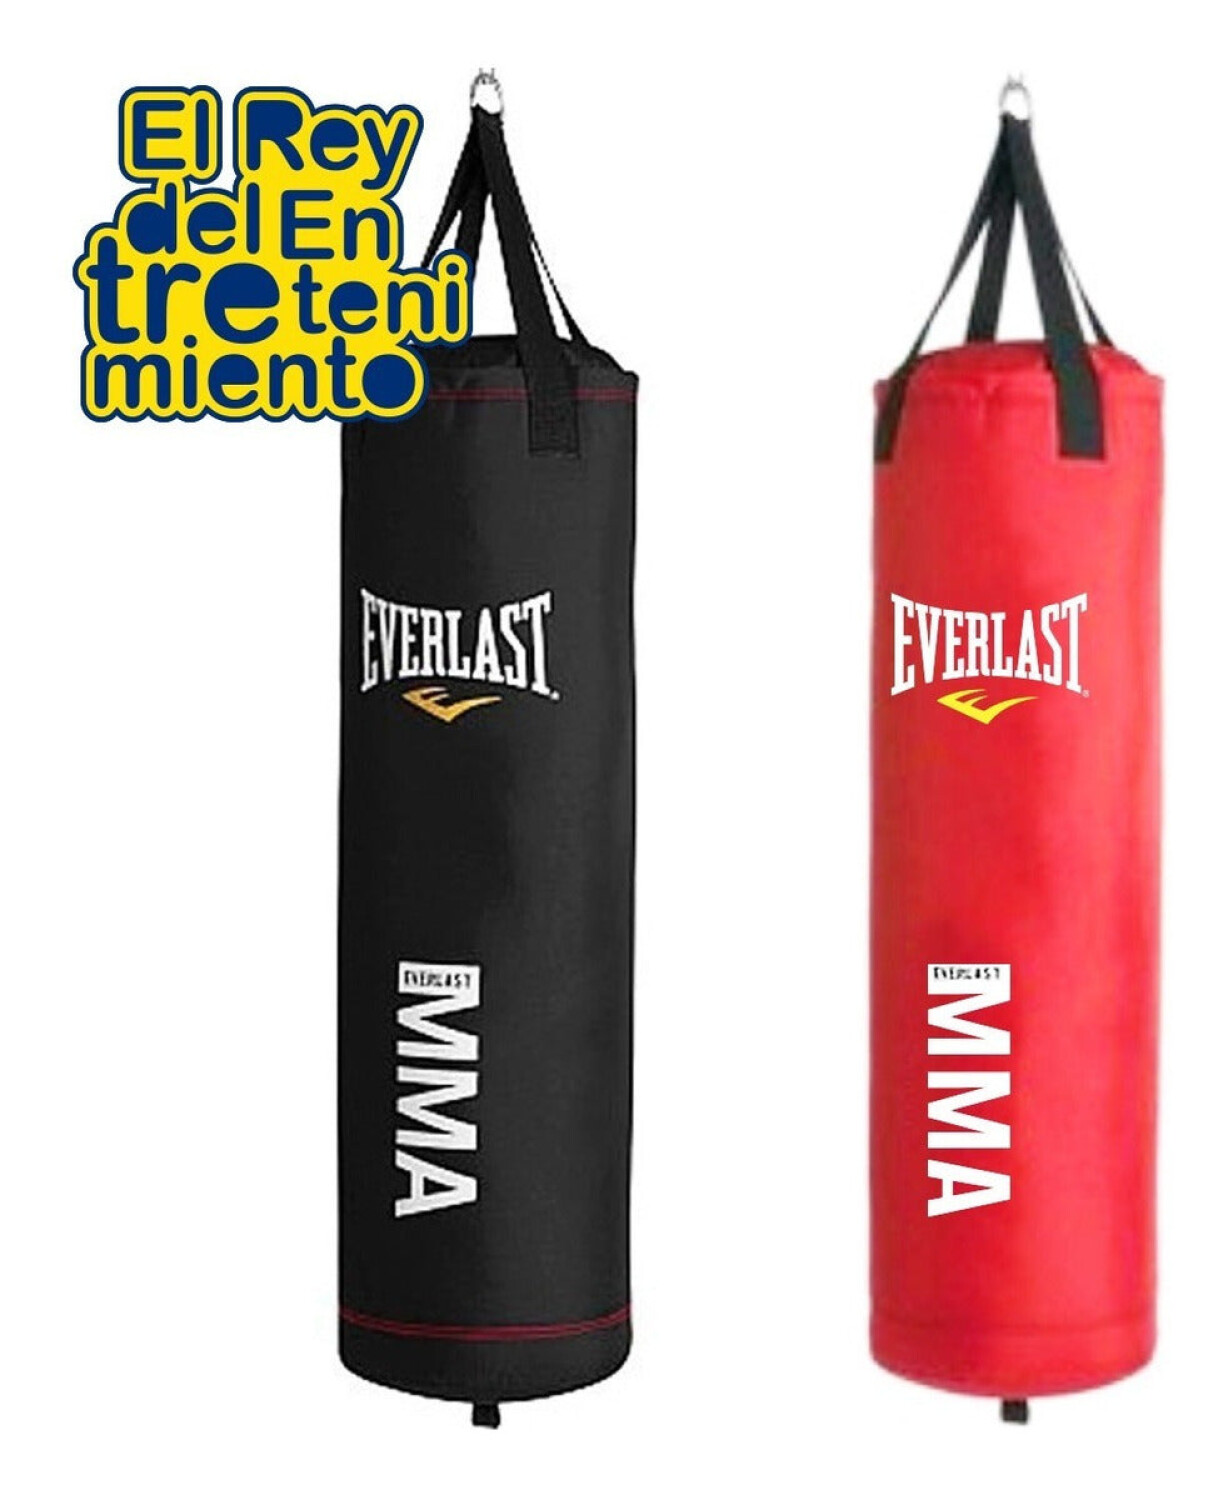 Bolsa Boxeo Everlast Profesional 1mt + Cadena + Rotor - Rojo — El Rey del  entretenimiento